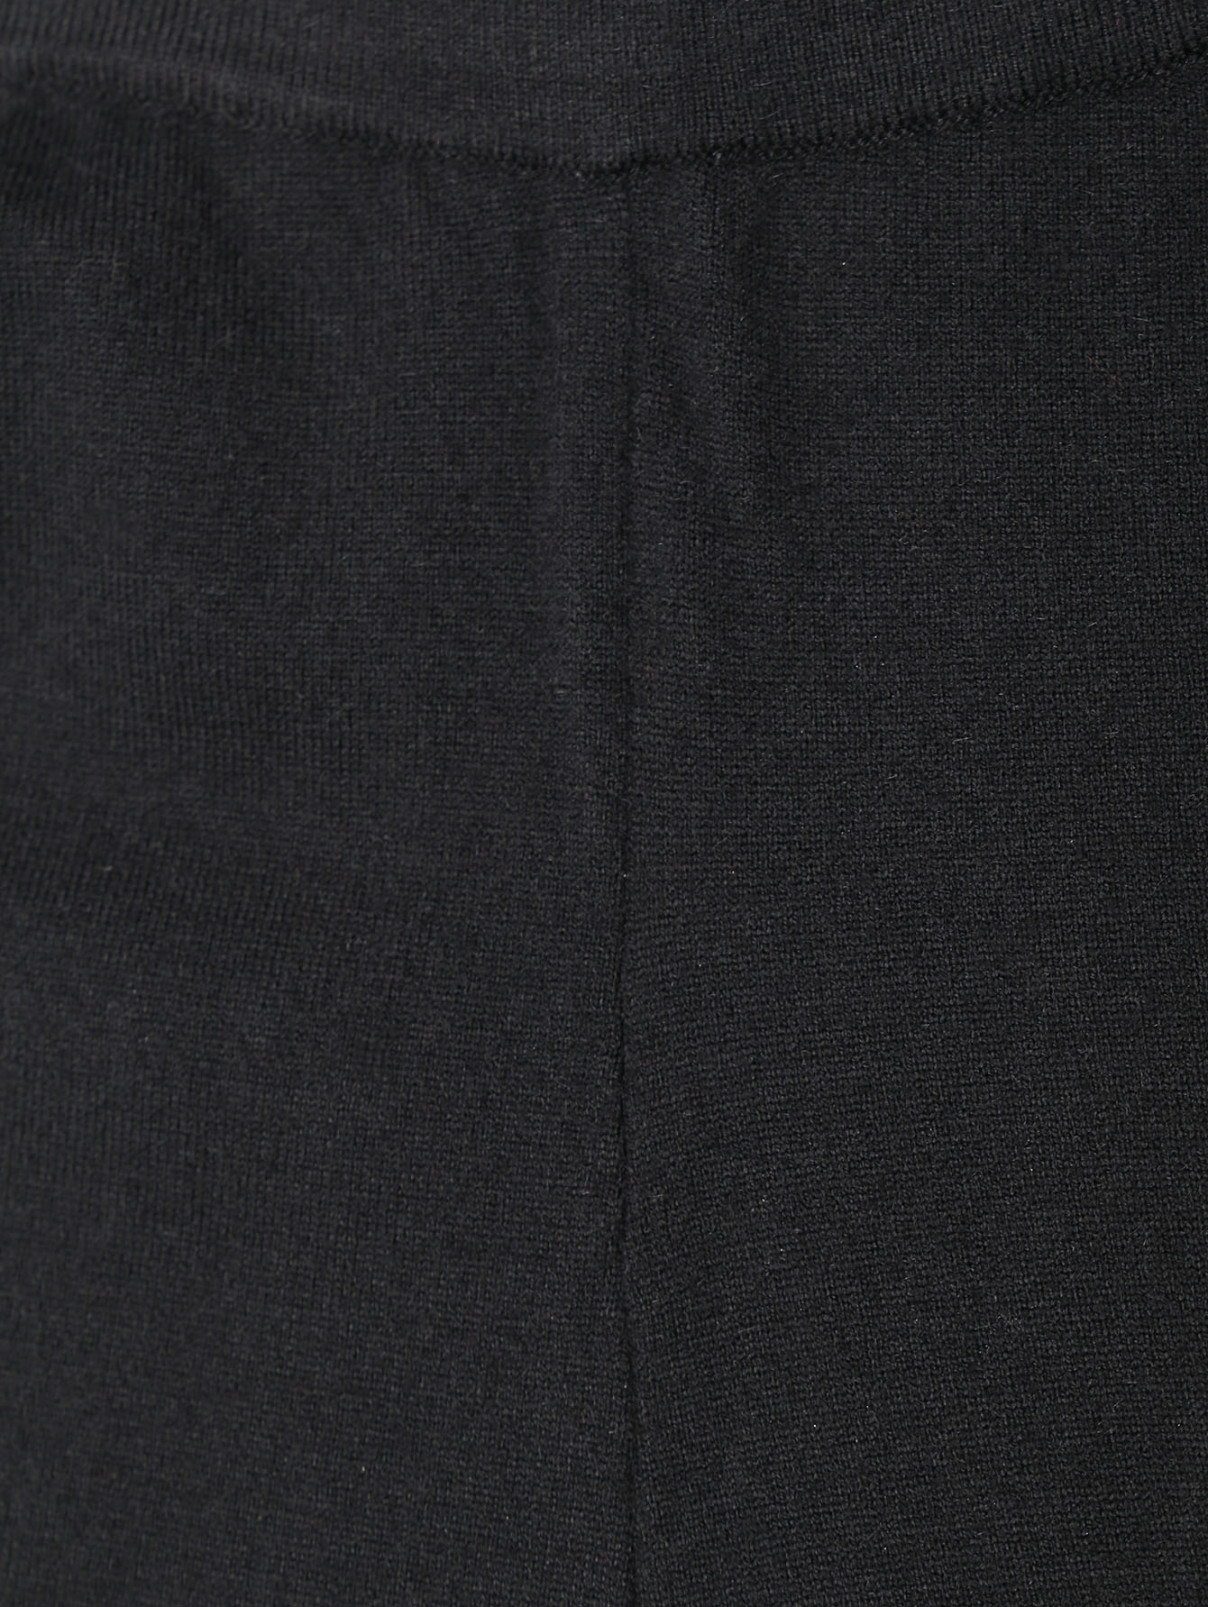 Трикотажные брюки на резинке с контрастным поясом Marina Rinaldi  –  Деталь  – Цвет:  Черный